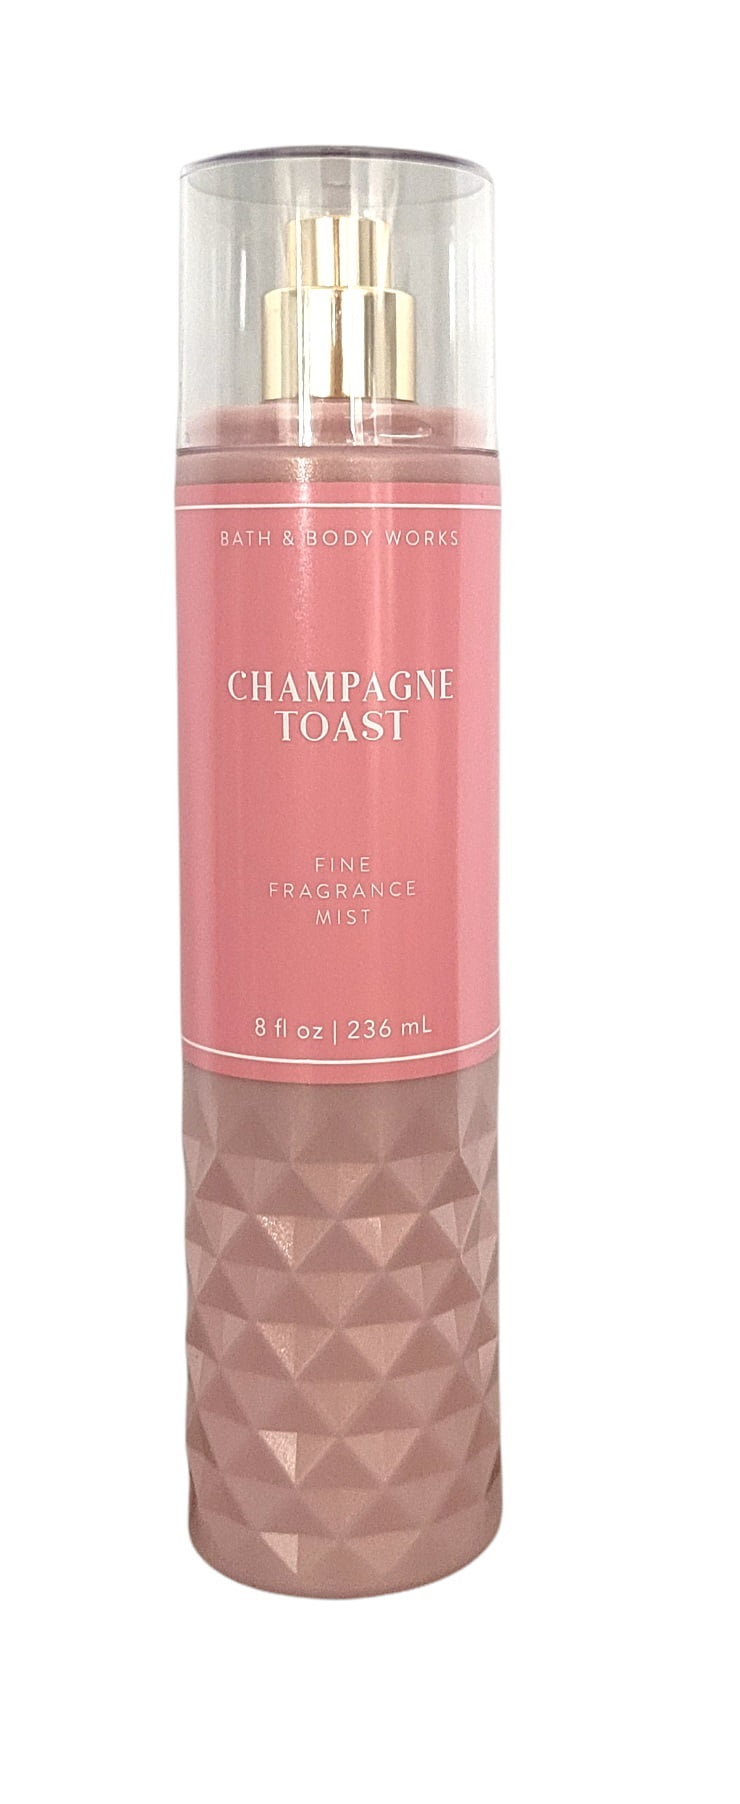 Bath & Body Works Champagne Toast Fine Fragrance Body Mist Spray 8 oz